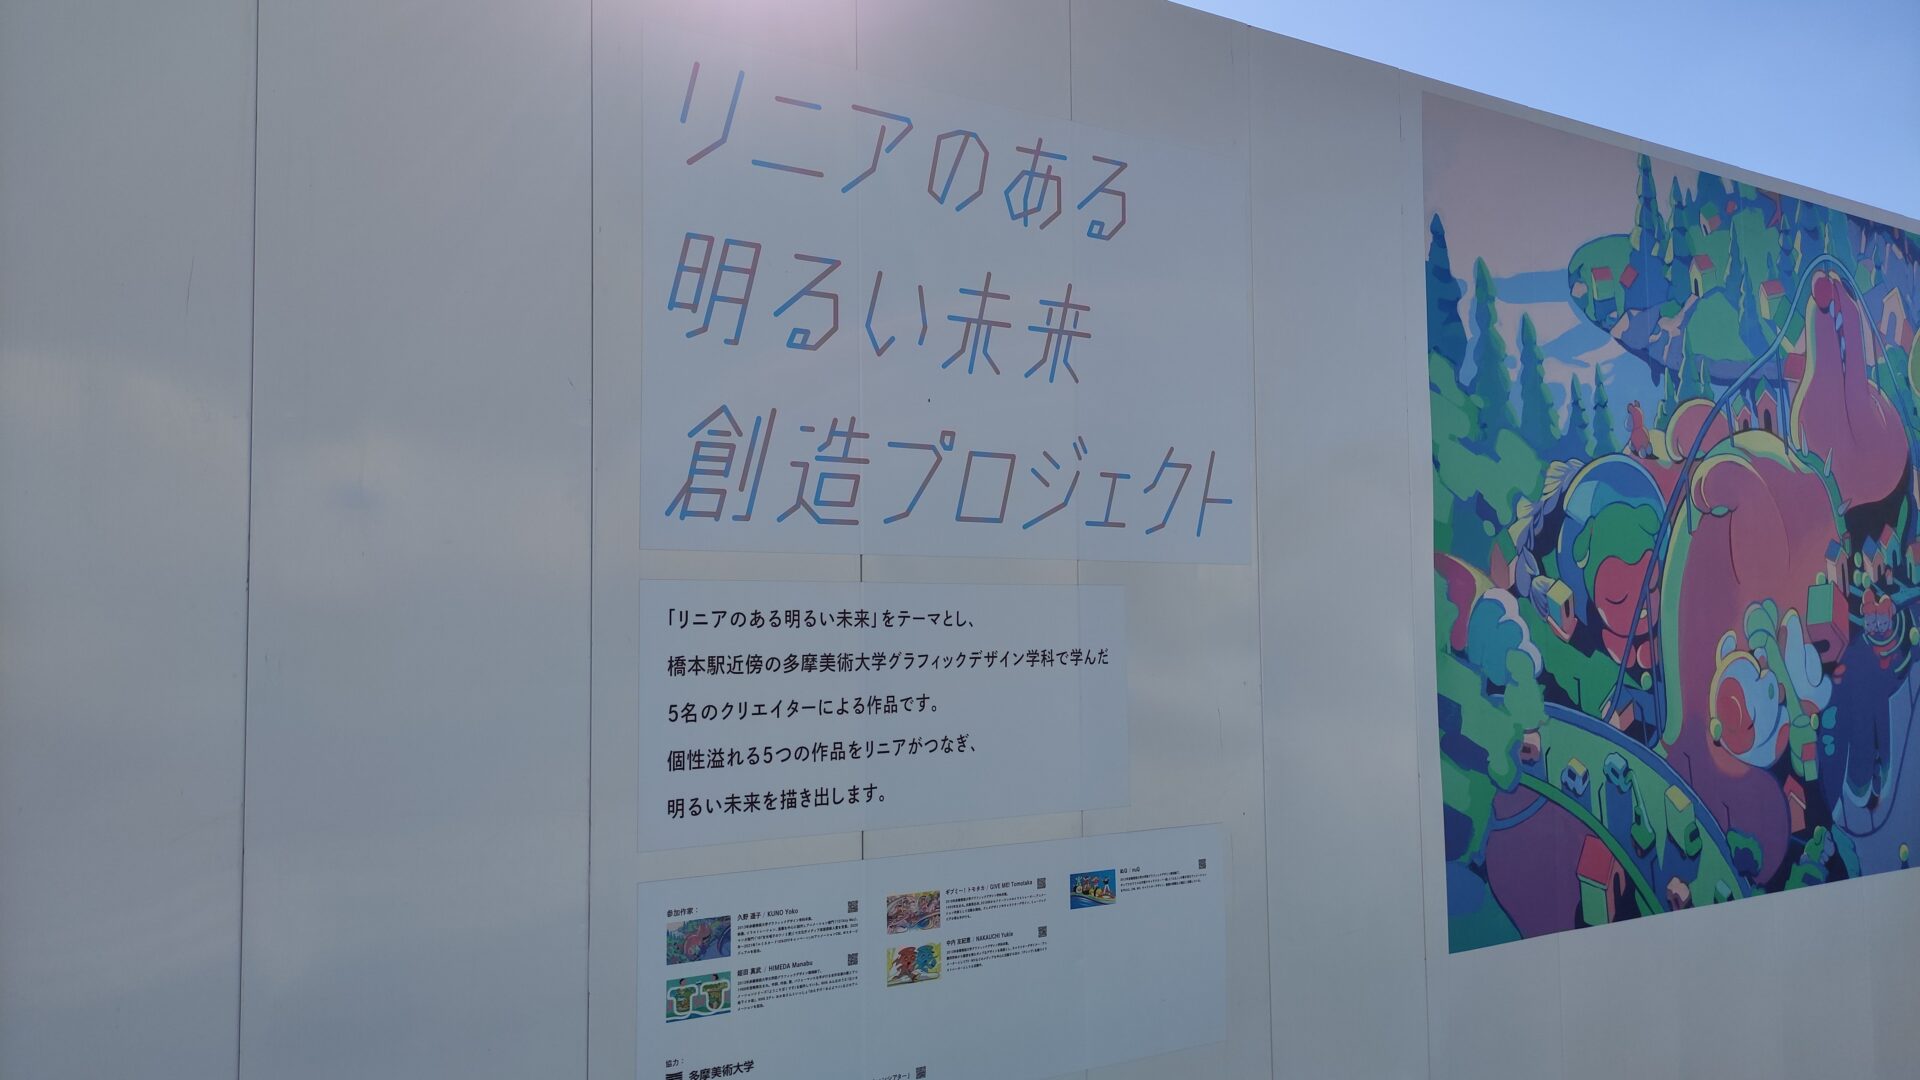 リニア「神奈川県駅」の工事の様子。2022/11下旬。03